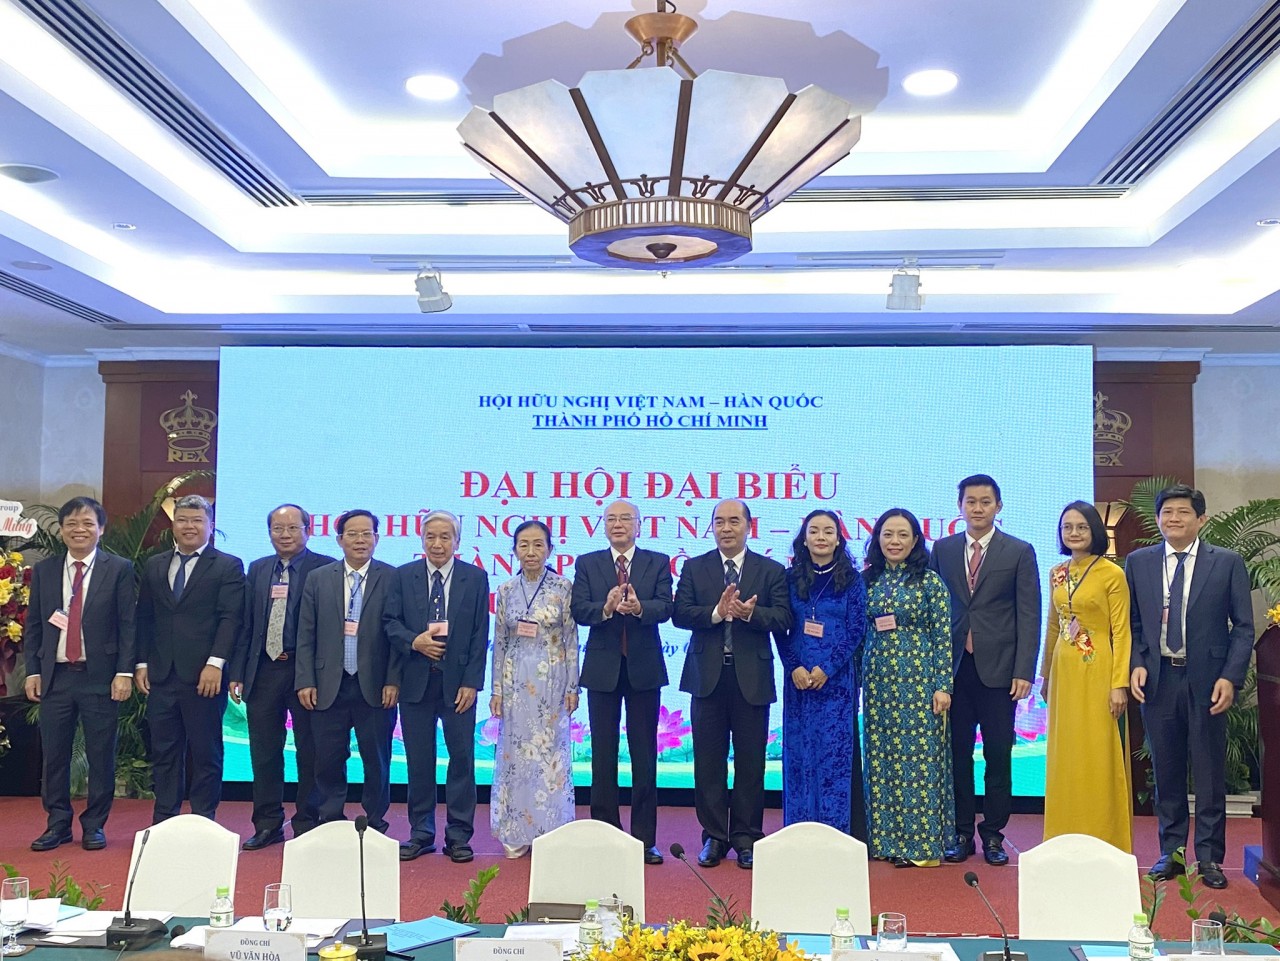 Ra mắt BCH Hội hữu nghị Việt Nam - Hàn Quốc TP.HCM nhiệm kỳ 2023 - 2028